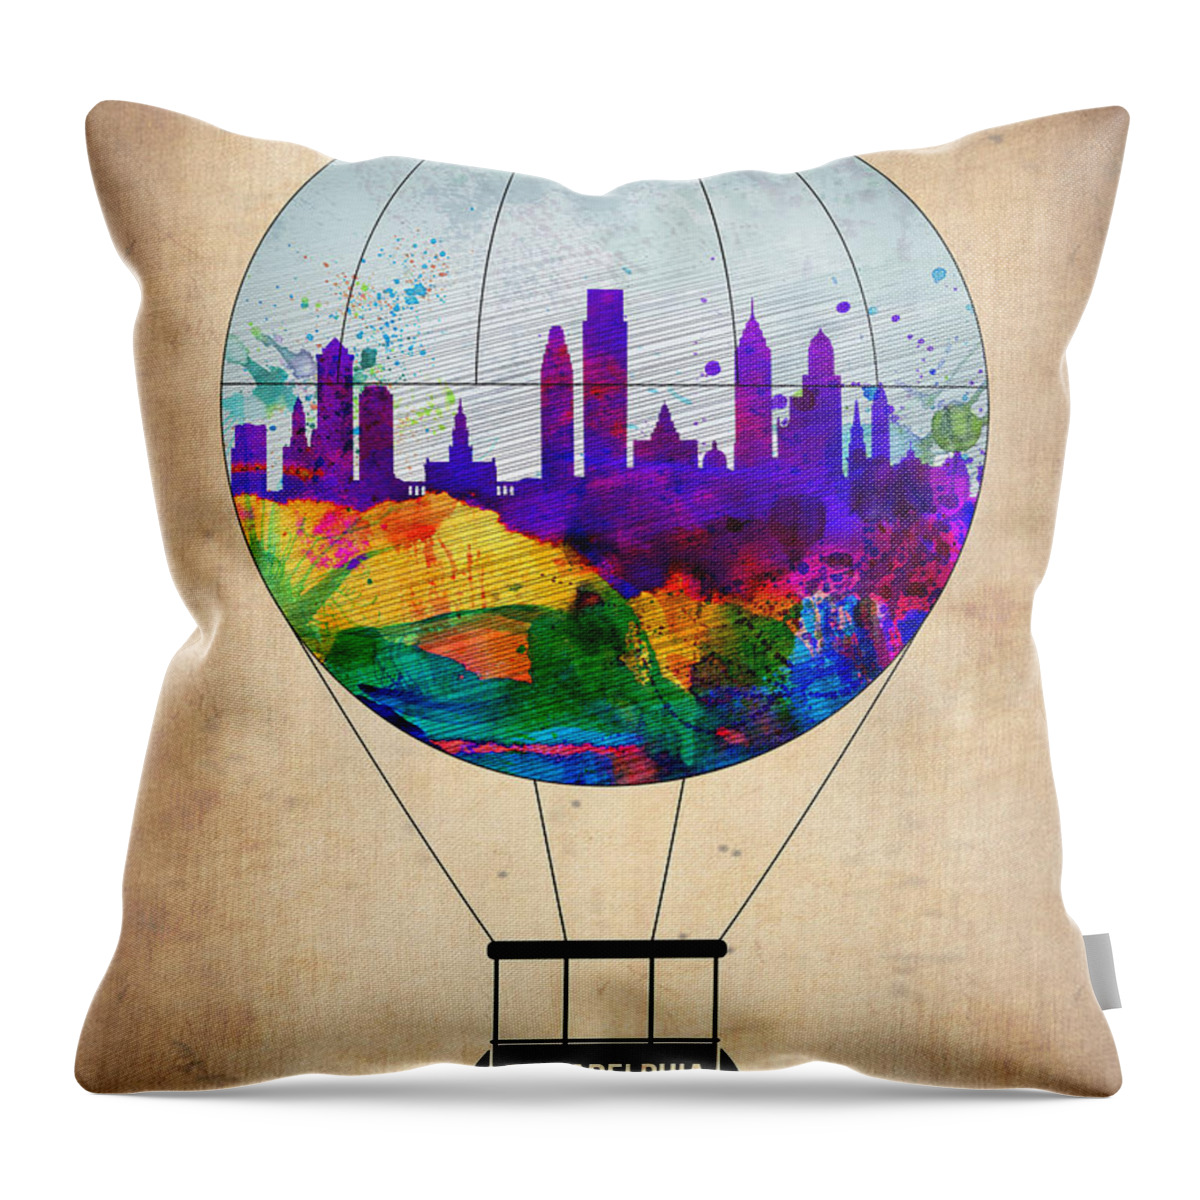 Philadelphia Throw Pillow featuring the painting Philadelphia Air Balloon by Naxart Studio